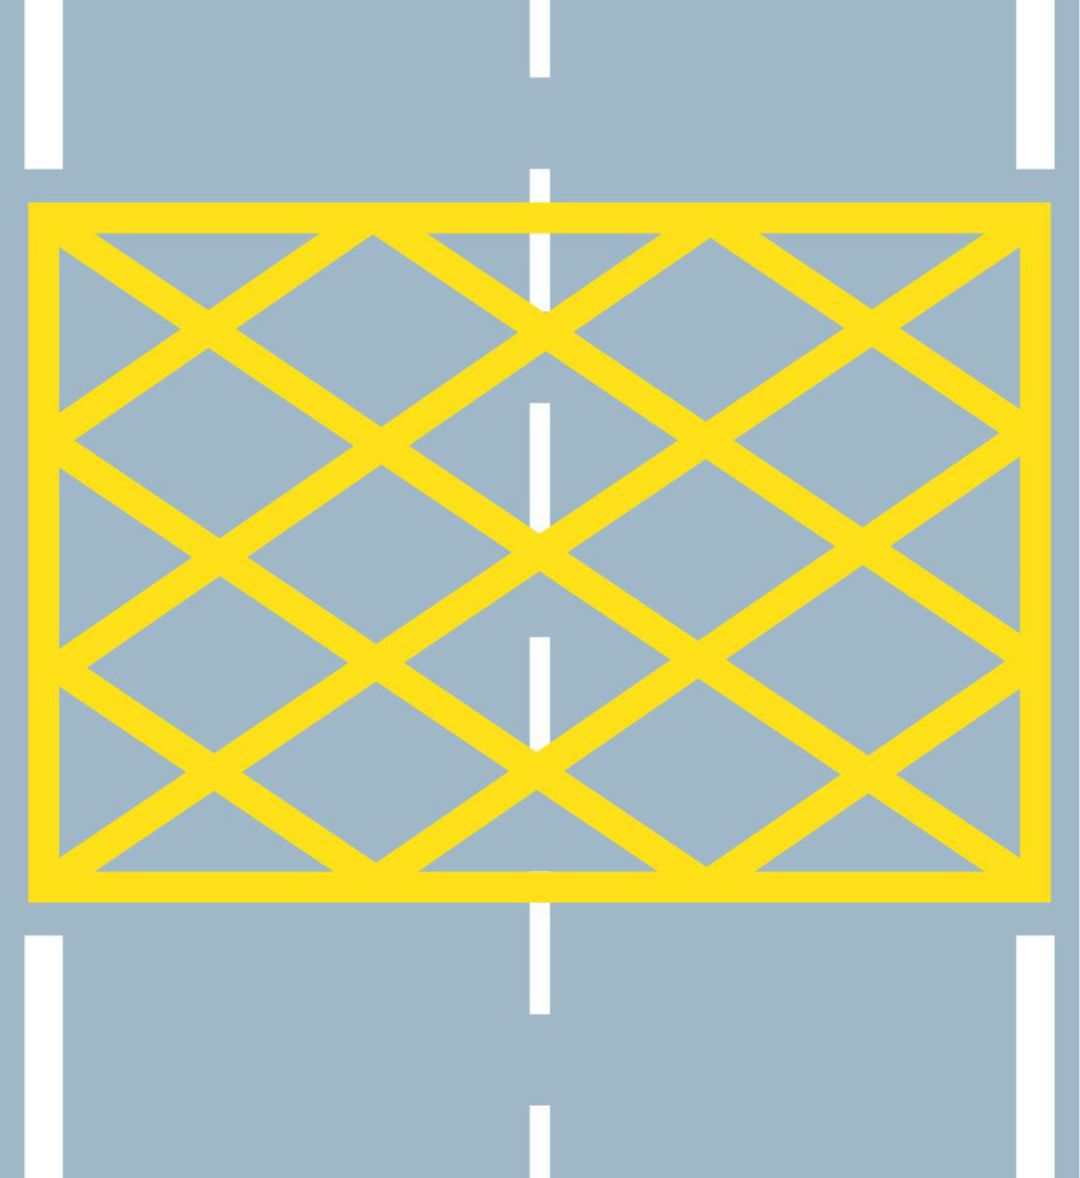 黄色网状条纹就是禁停线,一般位于重要单位,学校门口